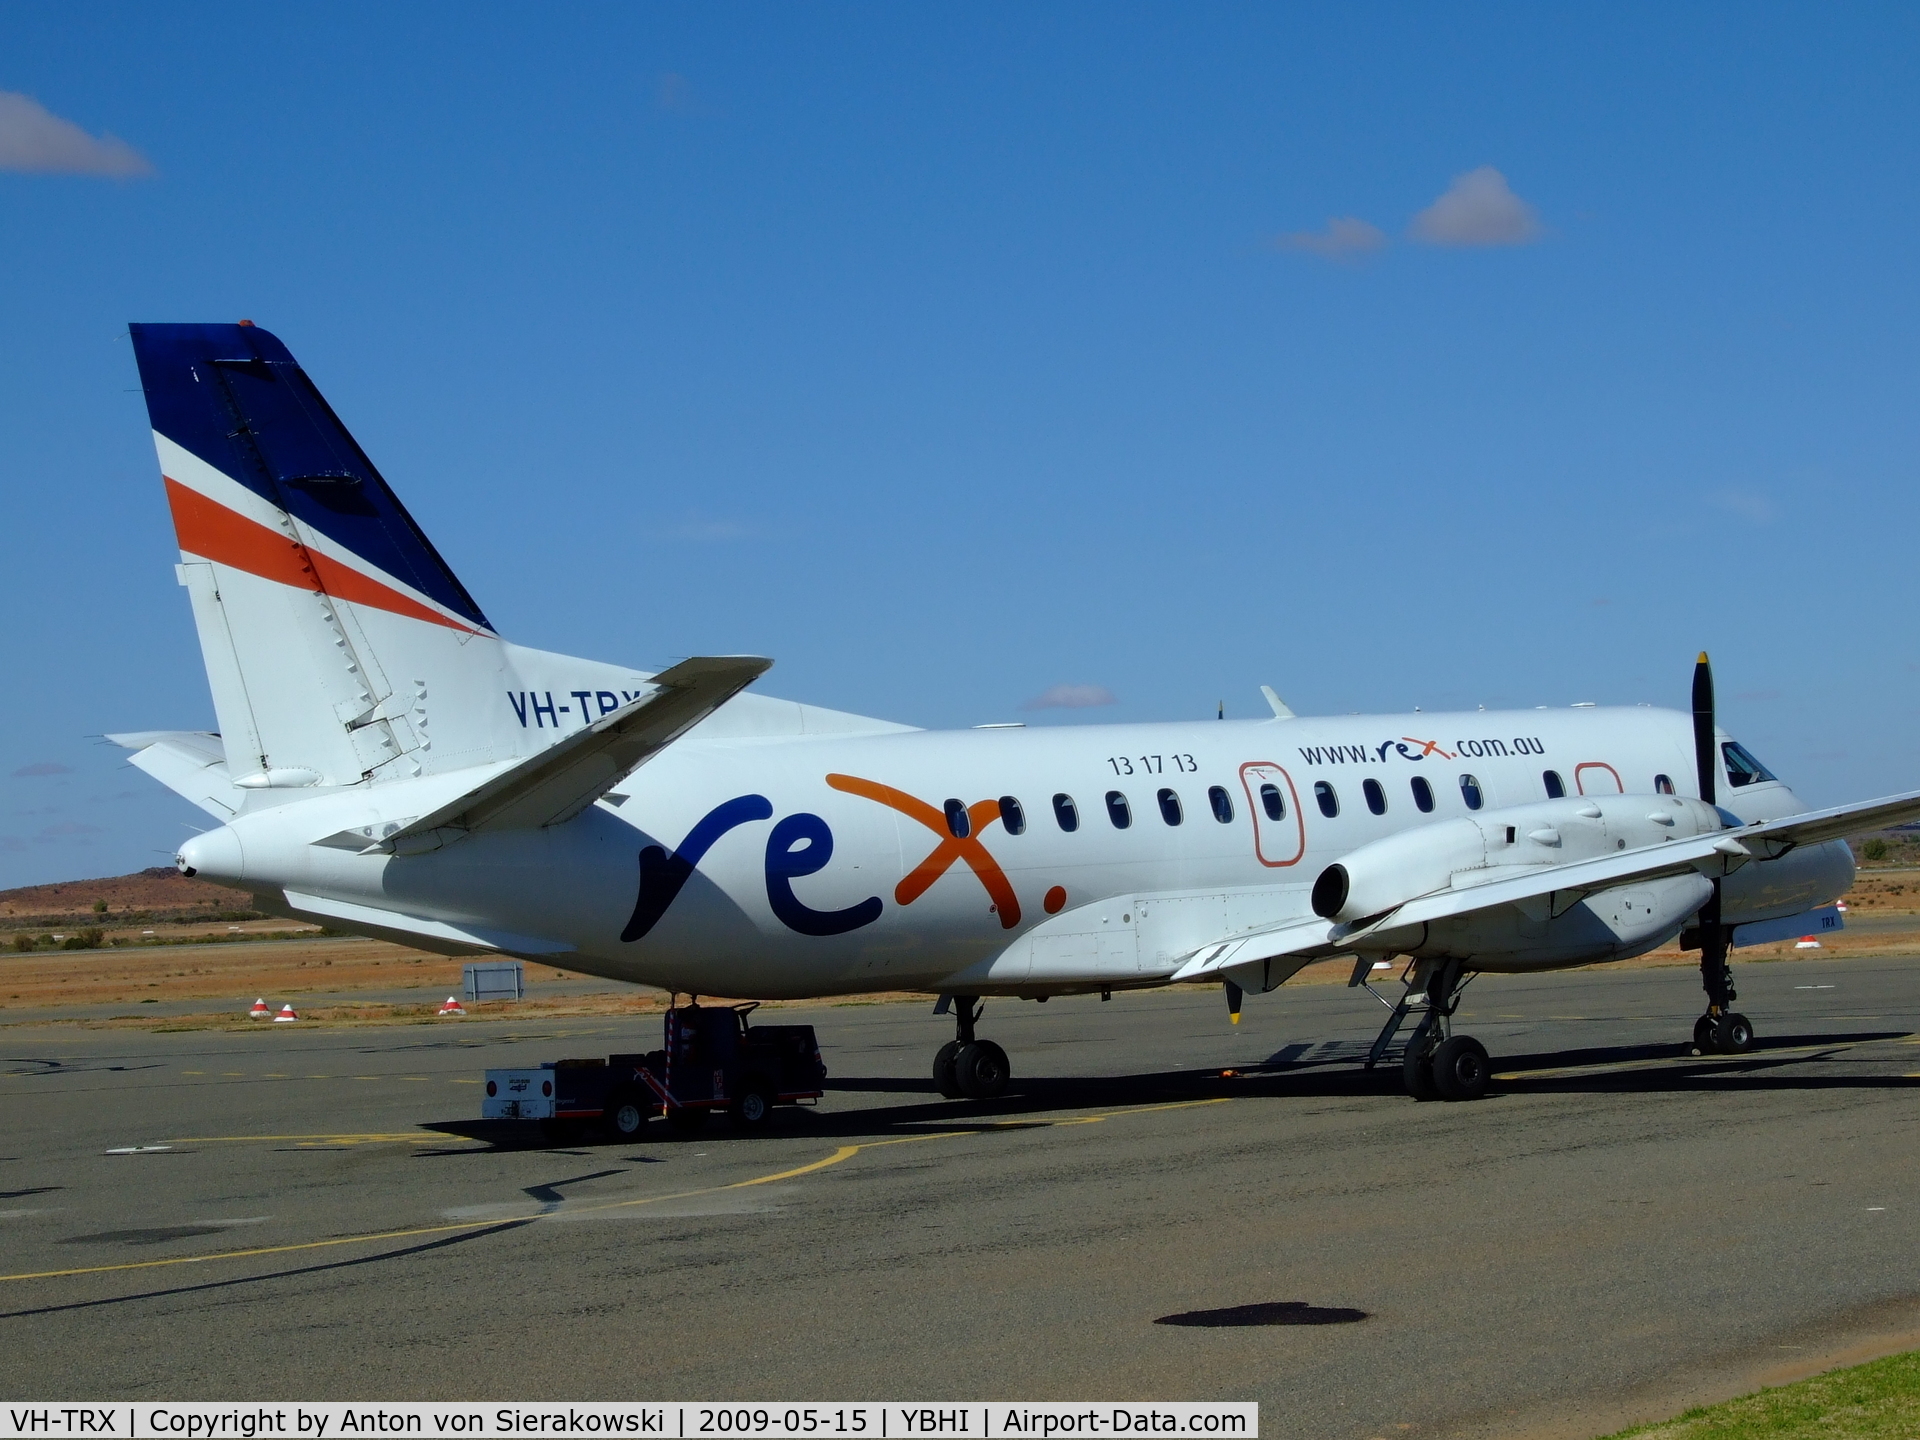 VH-TRX, 1992 Saab 340B C/N 340B-287, NSW Regional carrier Rex Aviation